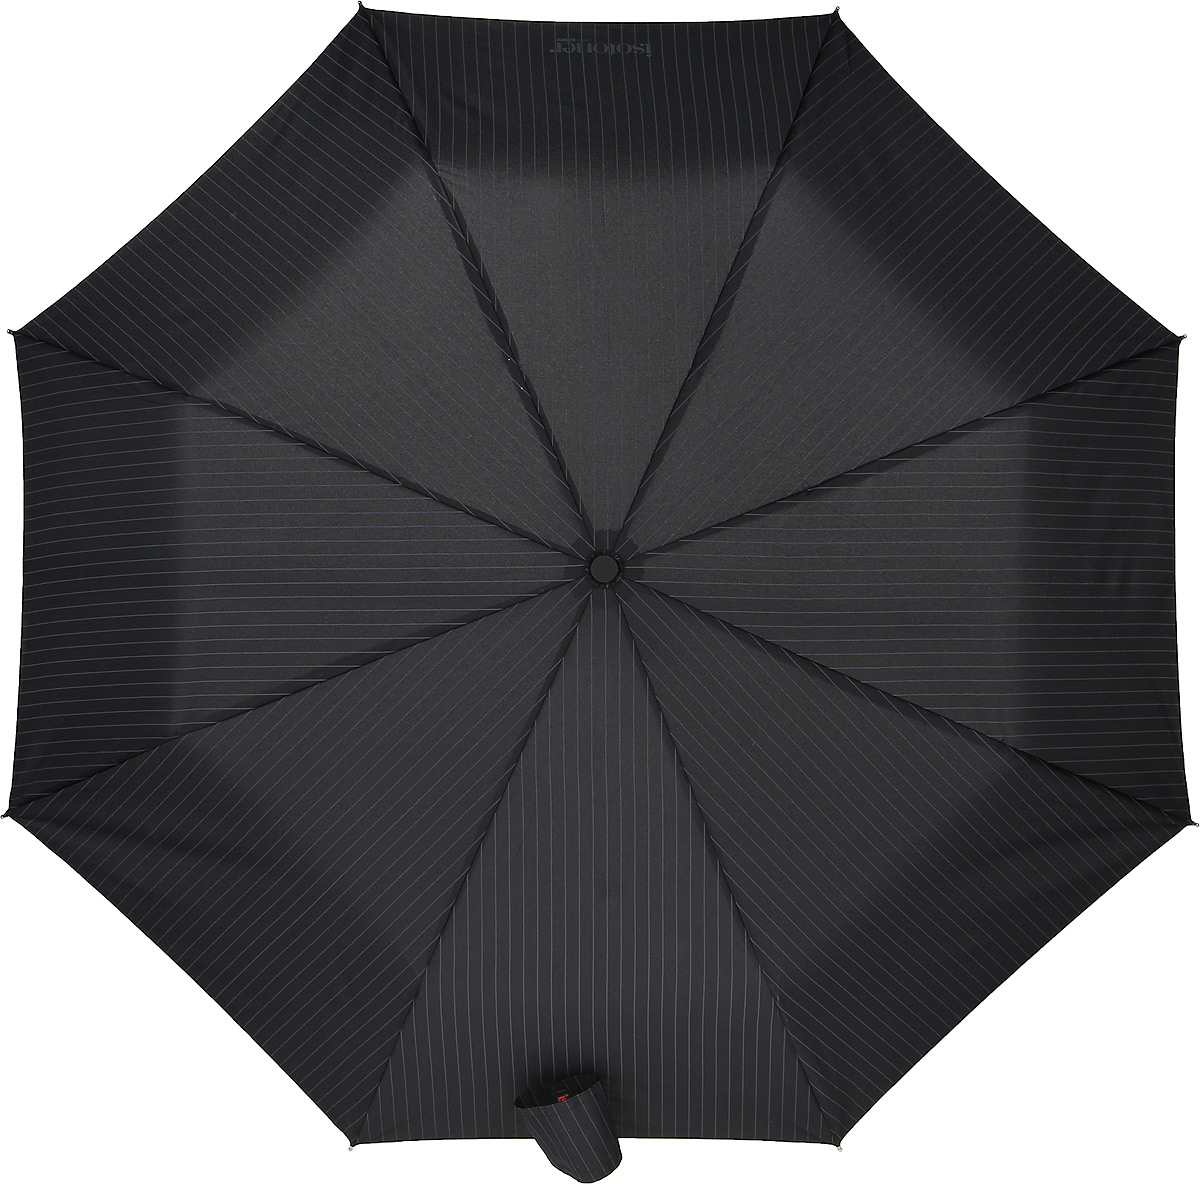 Зонт мужской Isotoner, автомат, 3 сложения, цвет: черный, серый. 09379-3872